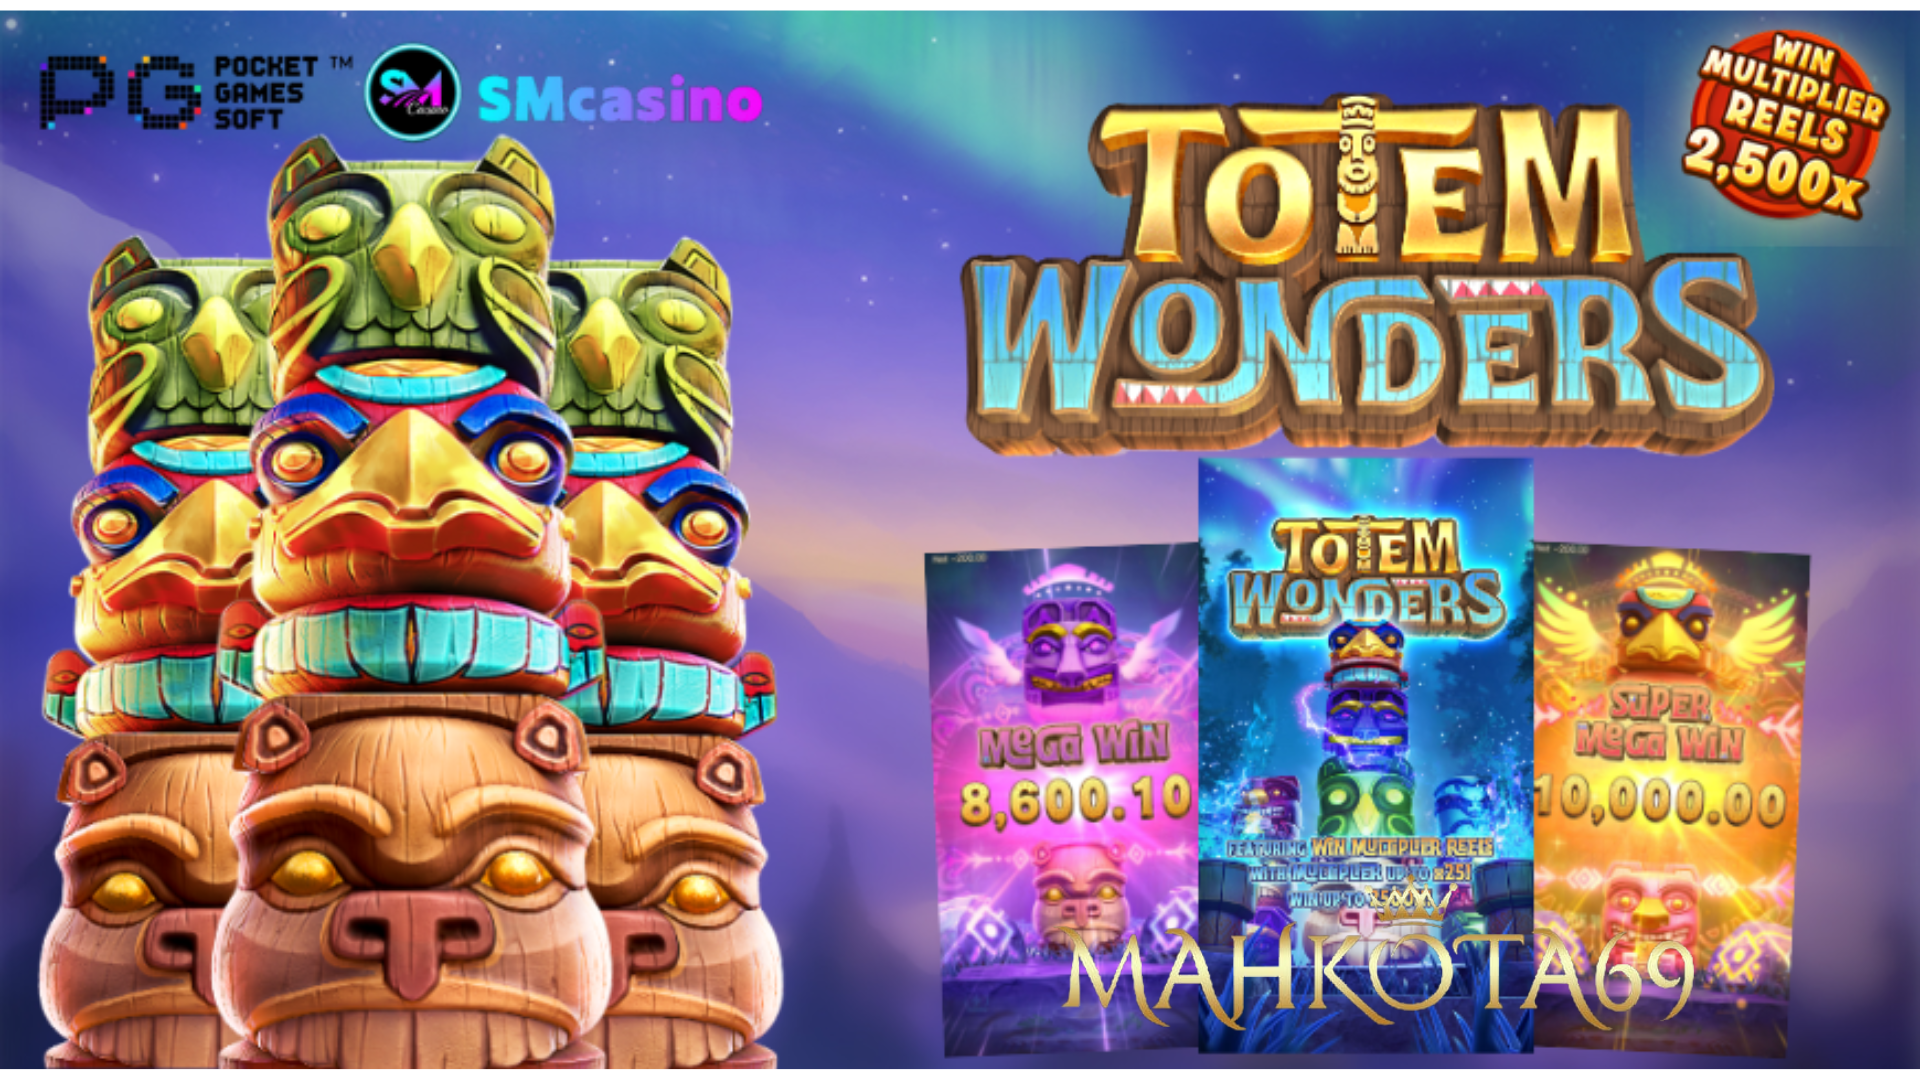 Totem Wonders MAHKOTA69